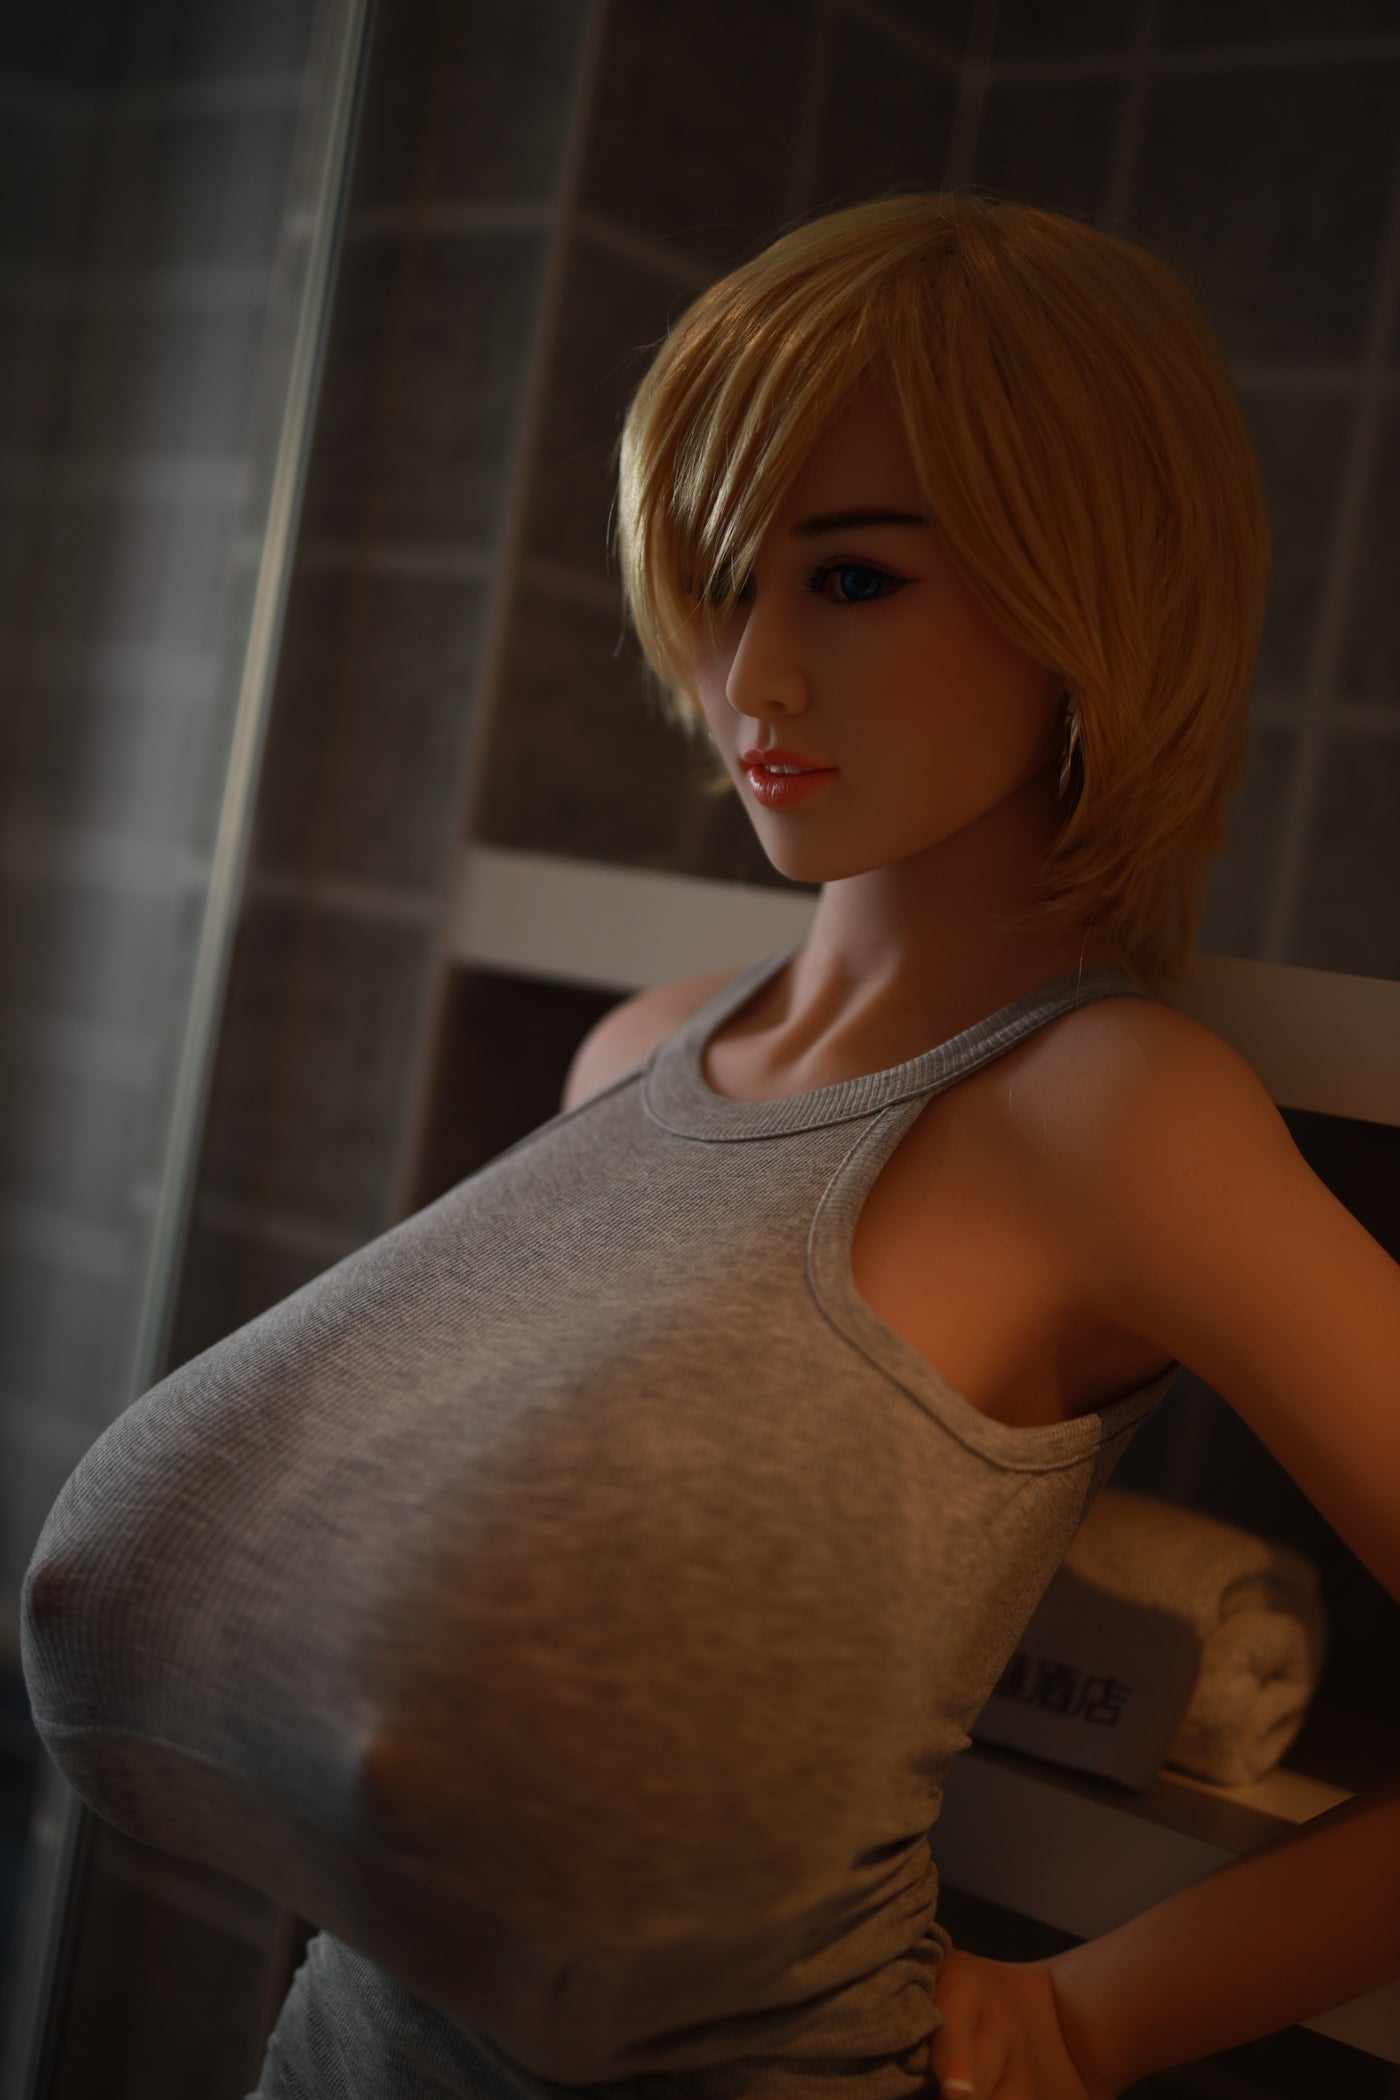 Neodoll Sugar Babe - Eve - Realistic Sex Doll - Gel Breast - Uterus - 170cm - Wheat